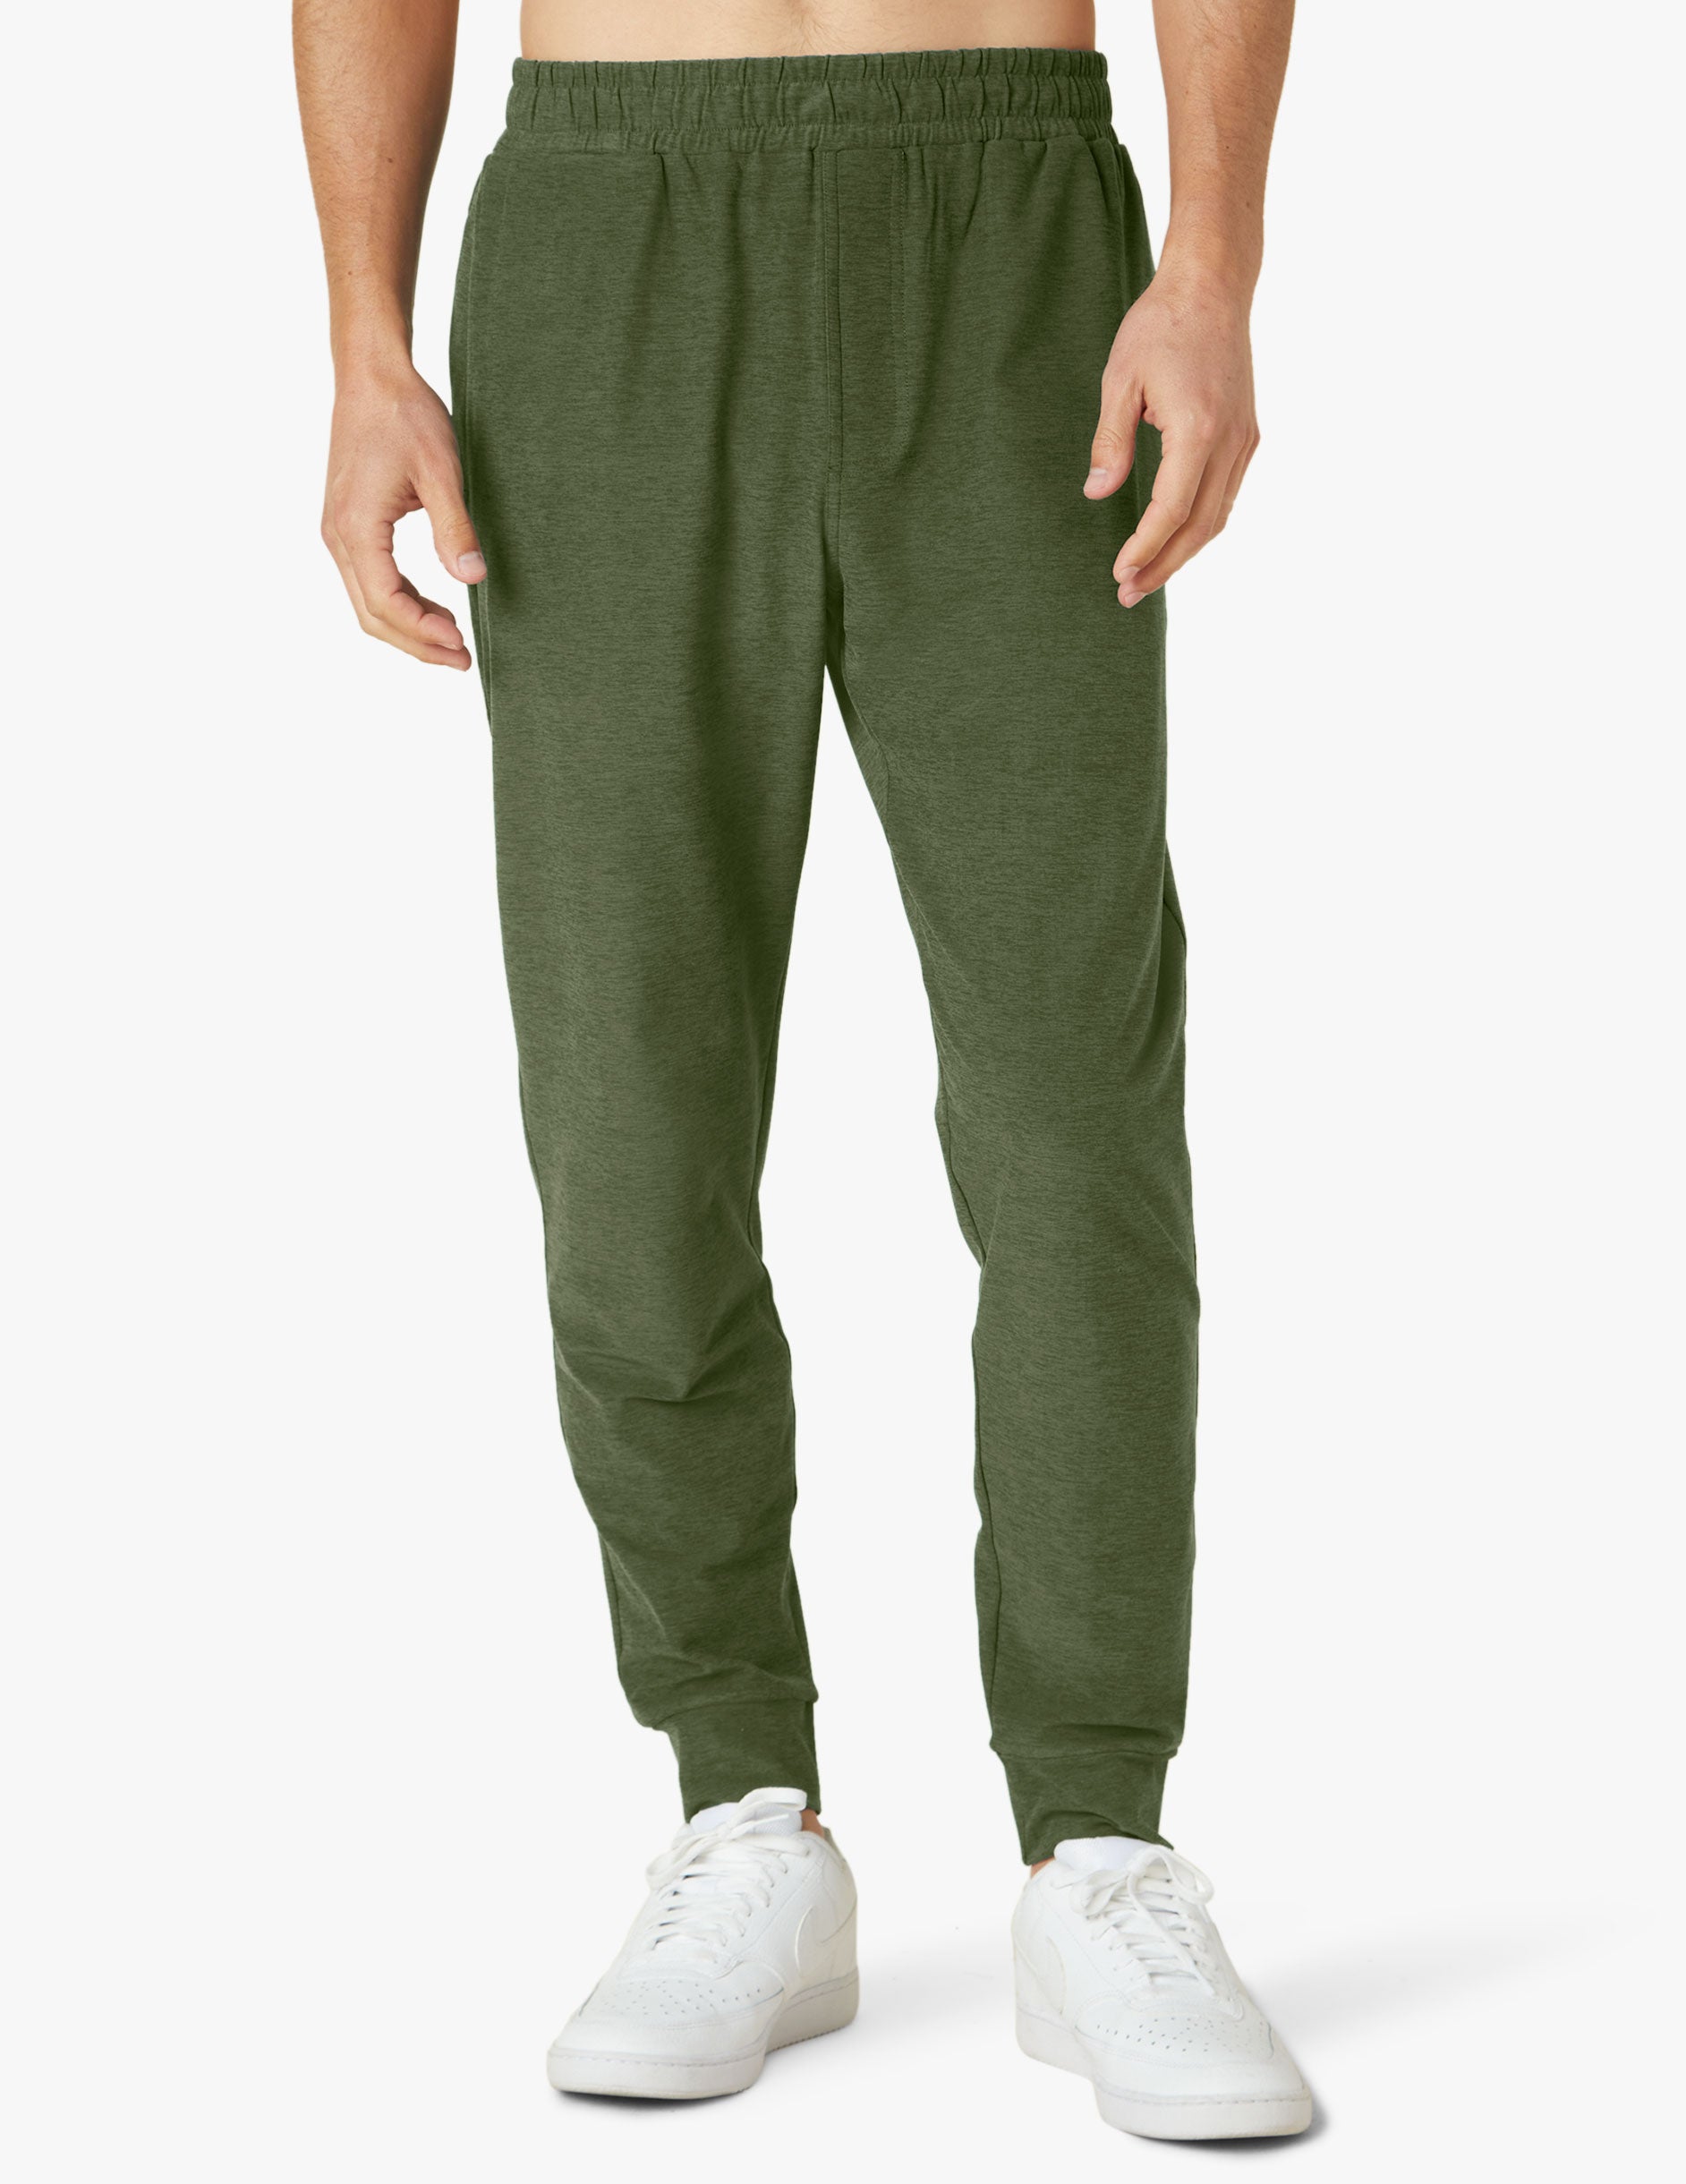 green mens sweatpants with drawstring at waist